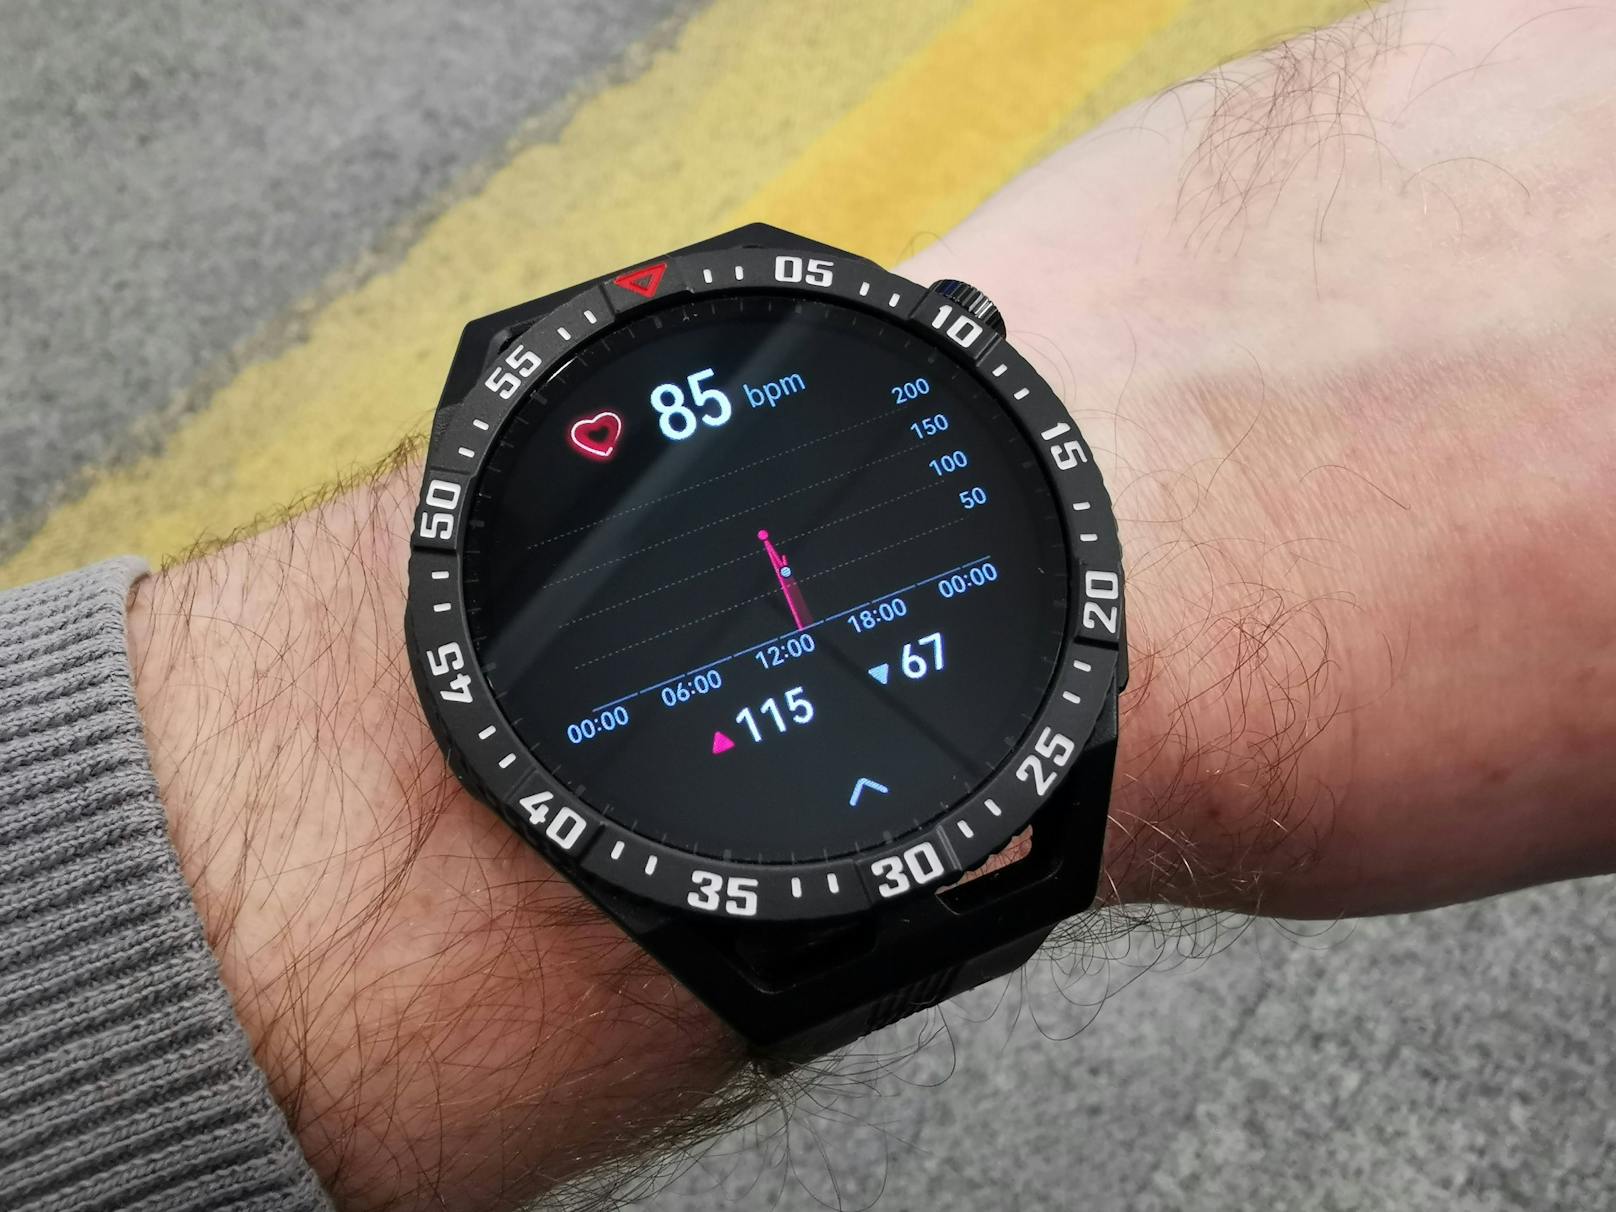 Zum Vergleich: Die "normale" Huawei Watch GT 3 startete beim Launch mit rund 250 Euro, das Pro-Modell gar bei 370 Euro. Der <em>"Heute"</em>-Test der neuen Smartwatch...